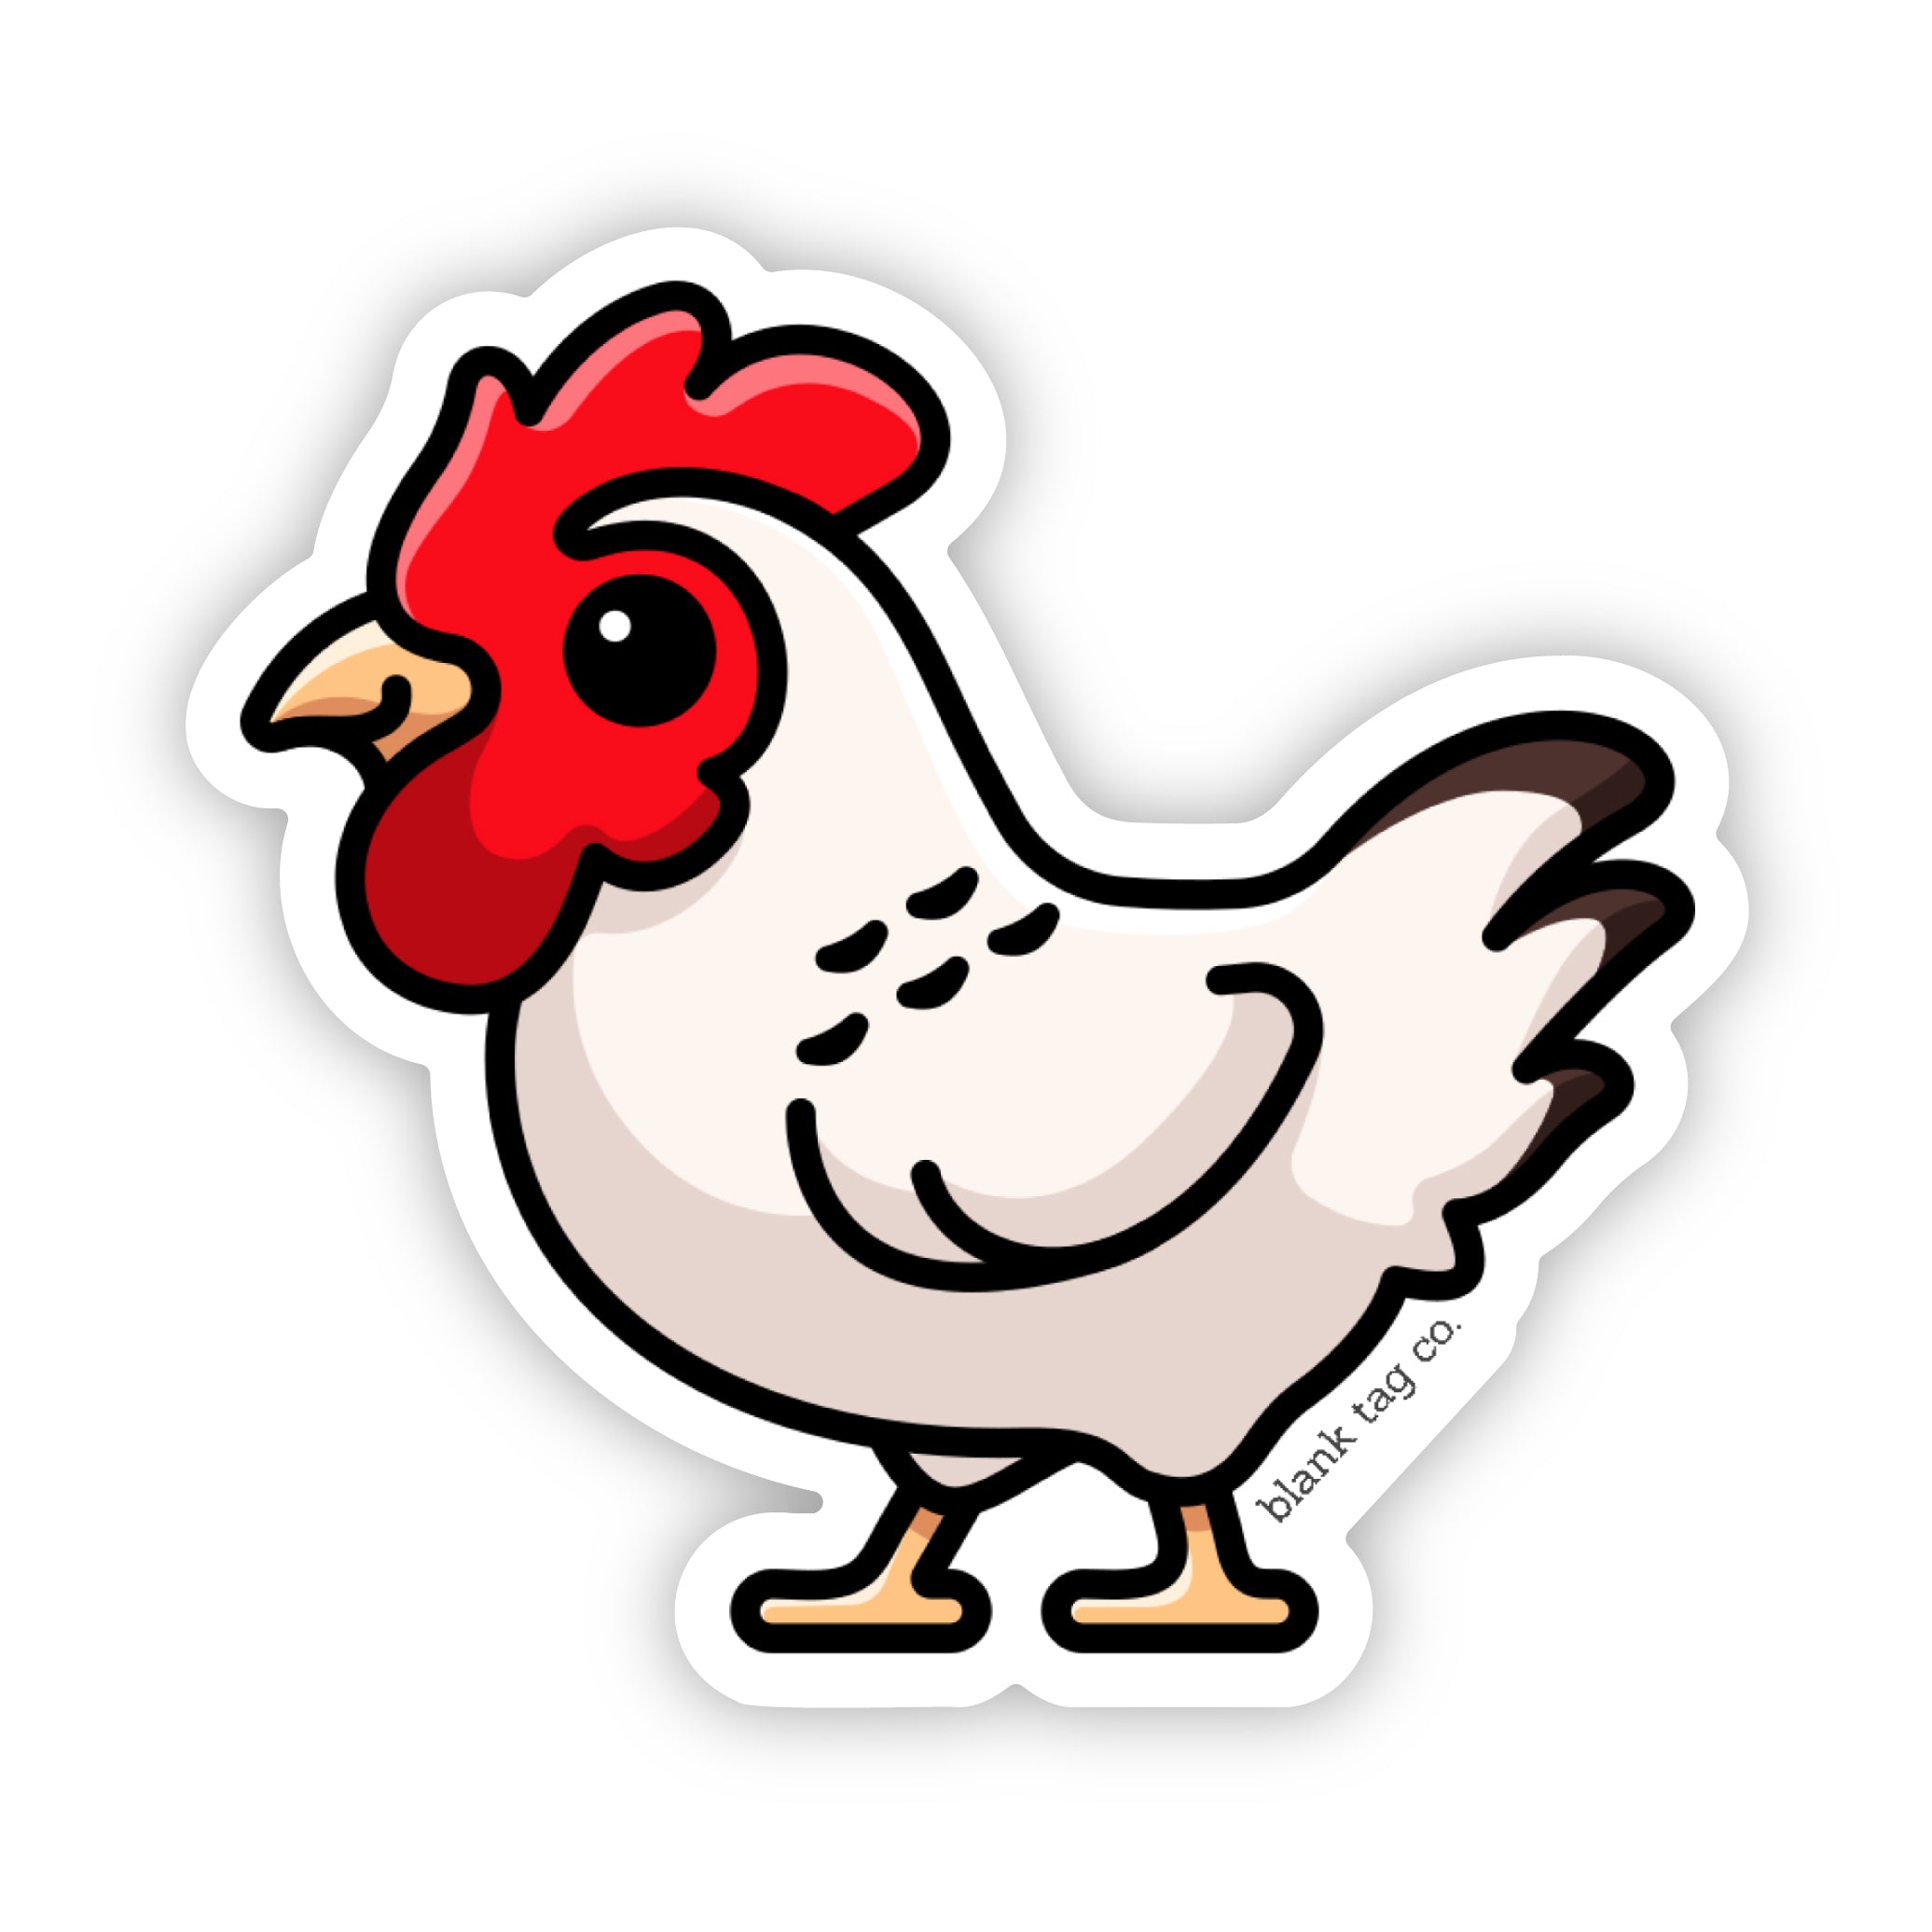 The Chicken Sticker